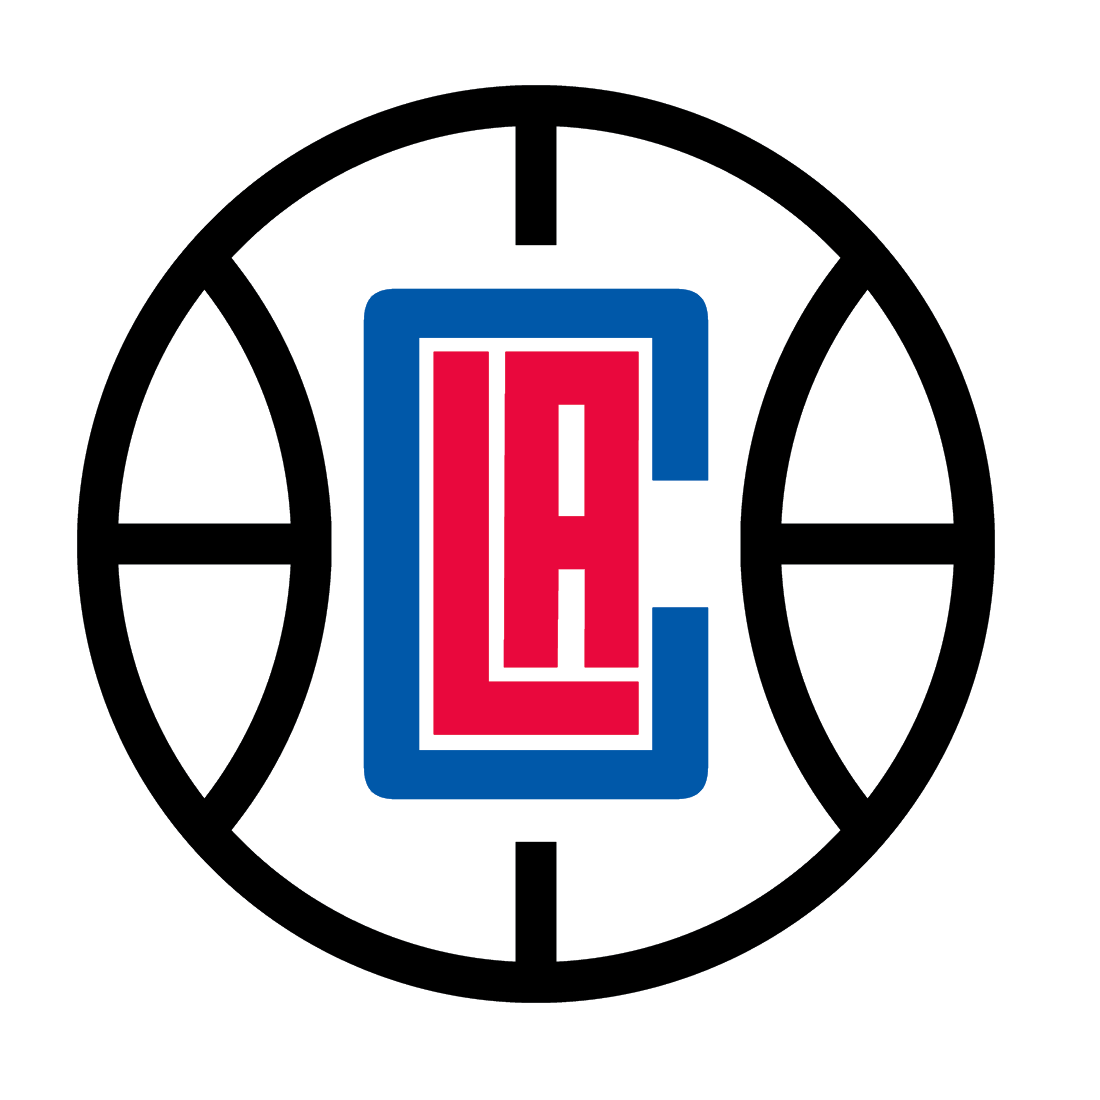 CLIENT LOGO - LA Clippers Logo